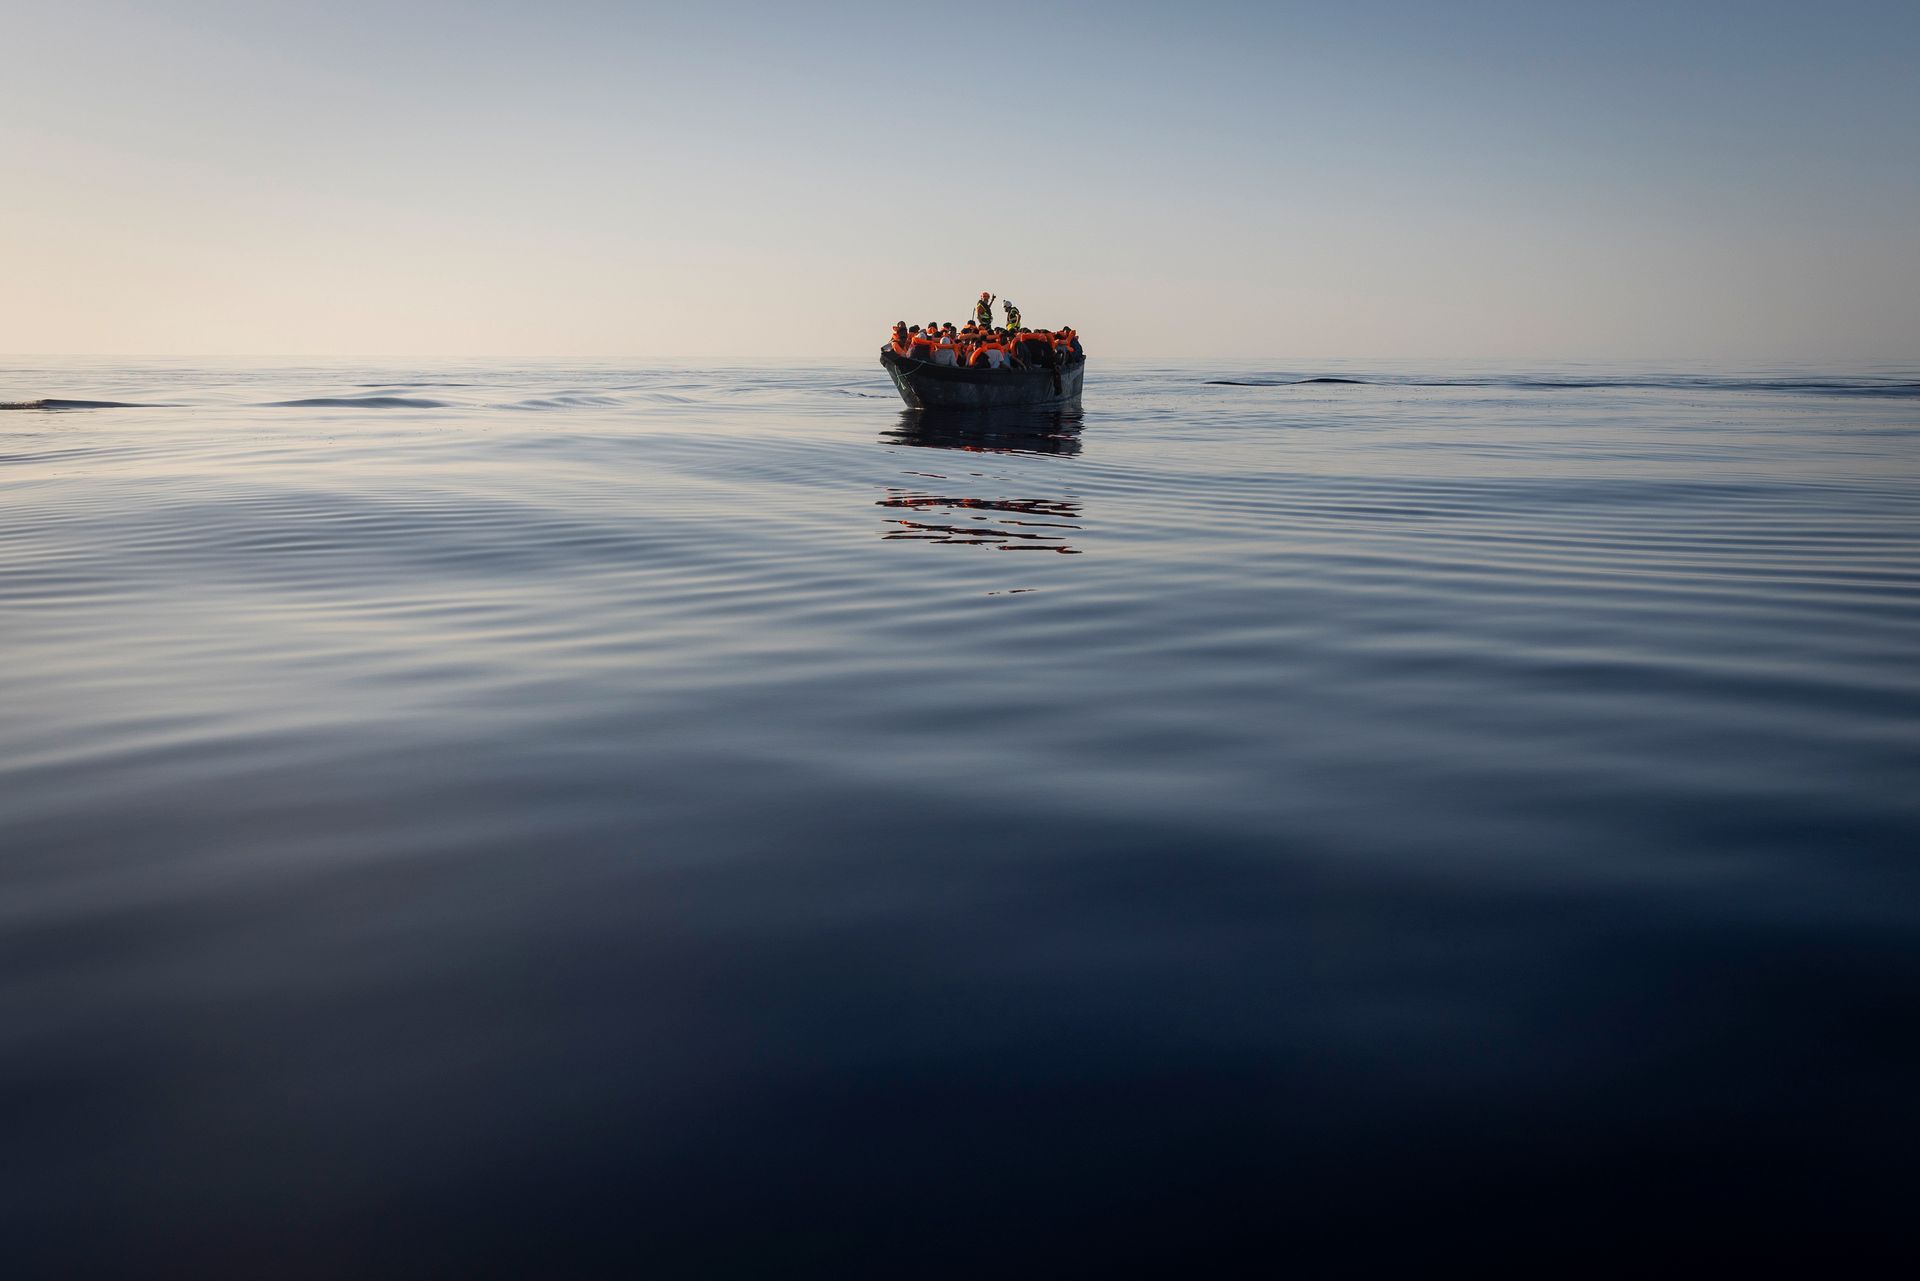 Mange mennesker med oransje redningsvester sitter tett i tett på en liten båt midt ute på havet. 